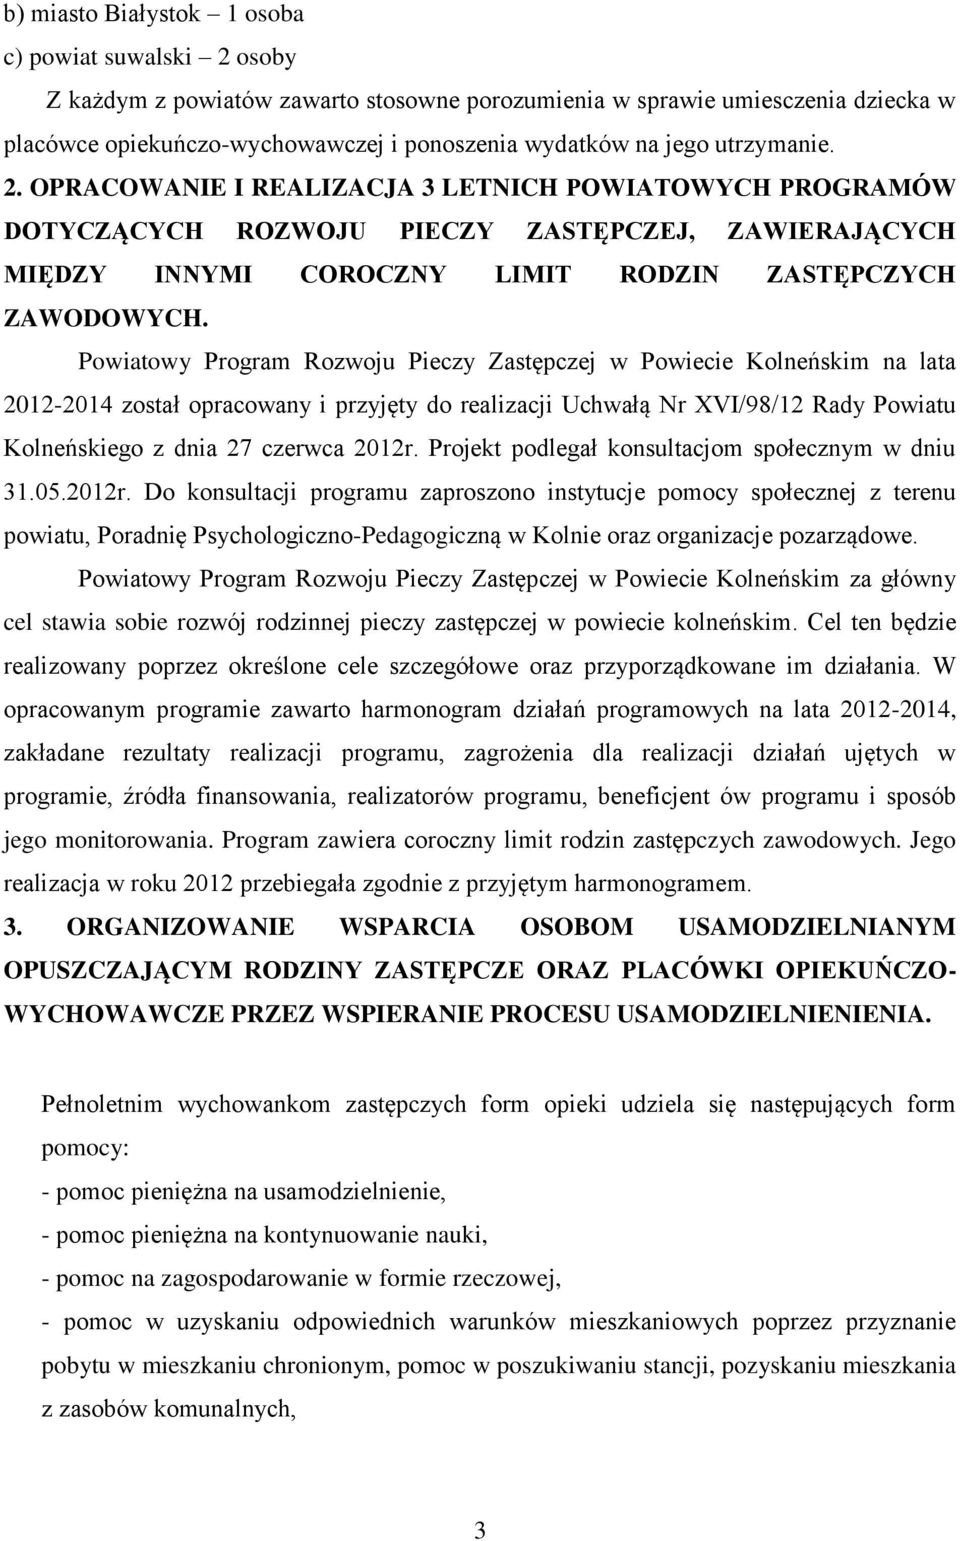 Powiatowy Program Rozwoju Pieczy Zastępczej w Powiecie Kolneńskim na lata 2012-2014 został opracowany i przyjęty do realizacji Uchwałą Nr XVI/98/12 Rady Powiatu Kolneńskiego z dnia 27 czerwca 2012r.